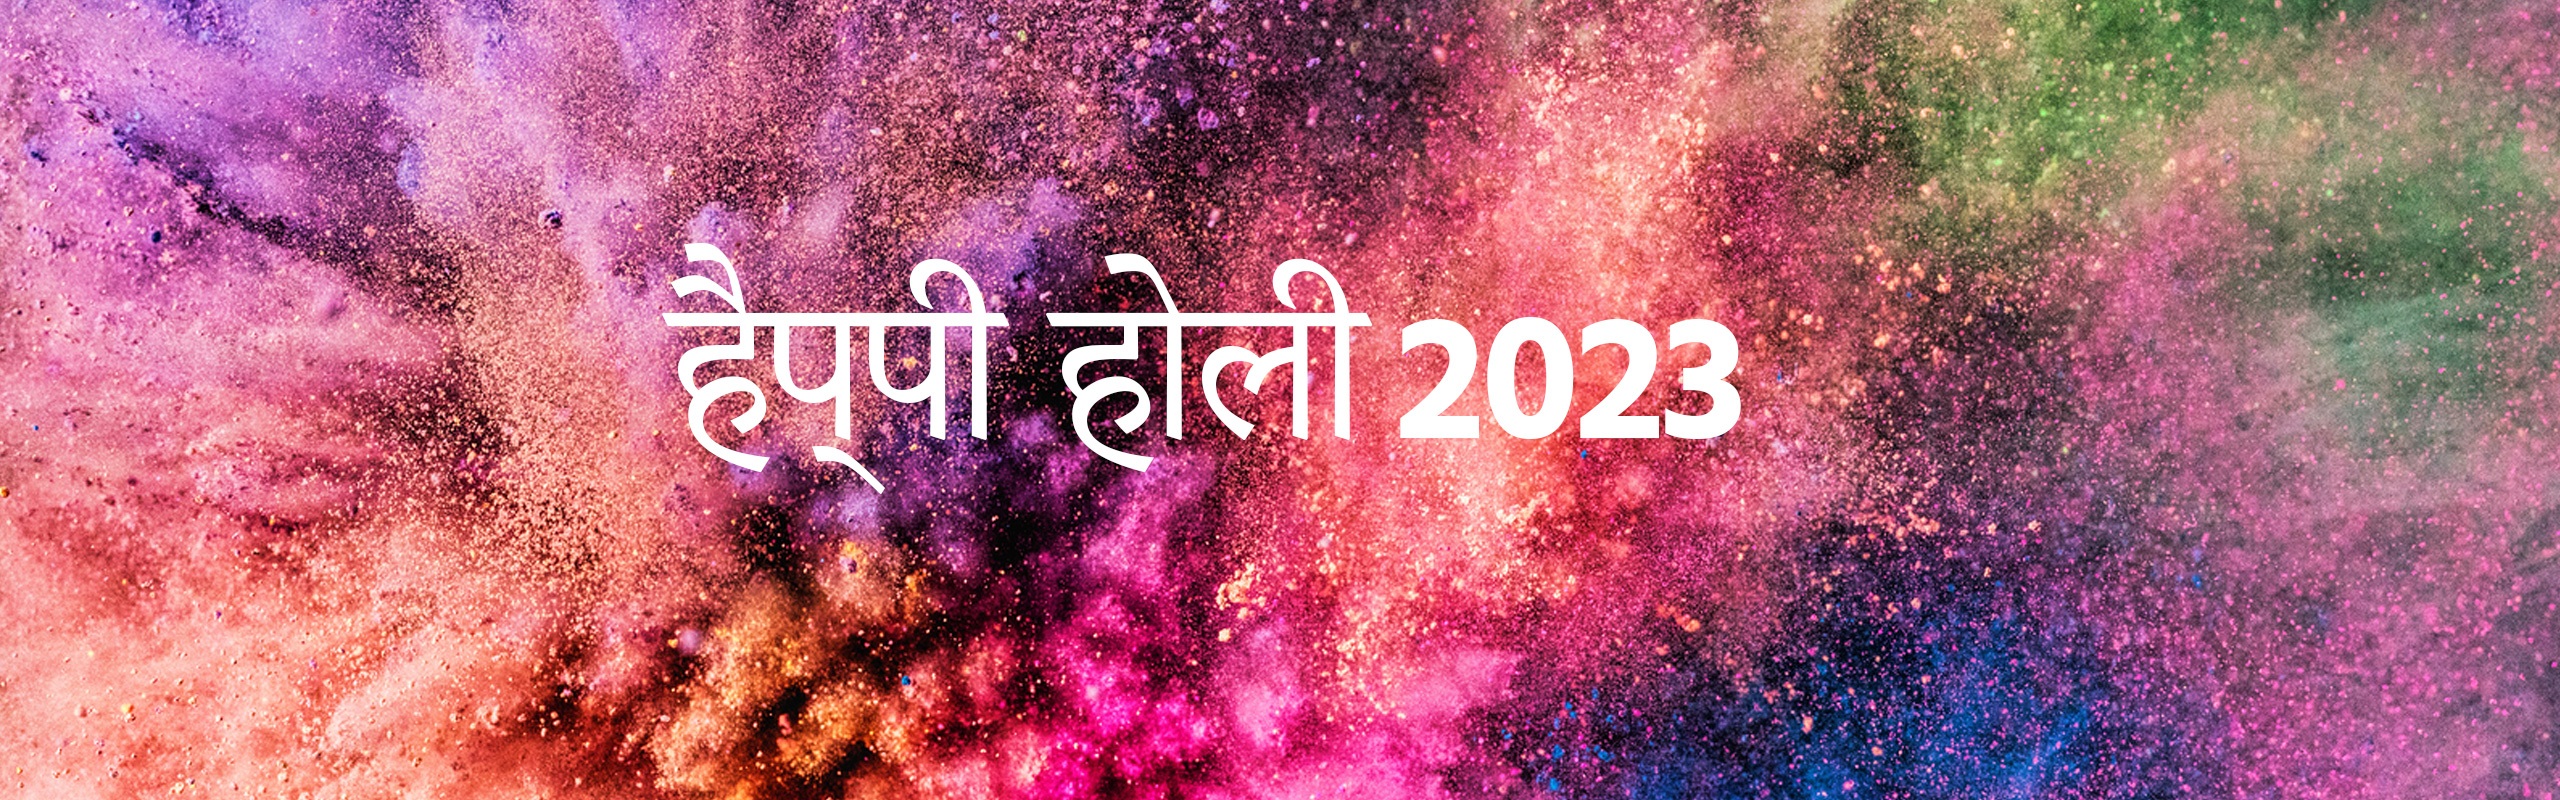 Holi Kab Hai 2023 (होली कब है 2023), 8 मार्च 2023, होलिका दहन का मुहूर्त 